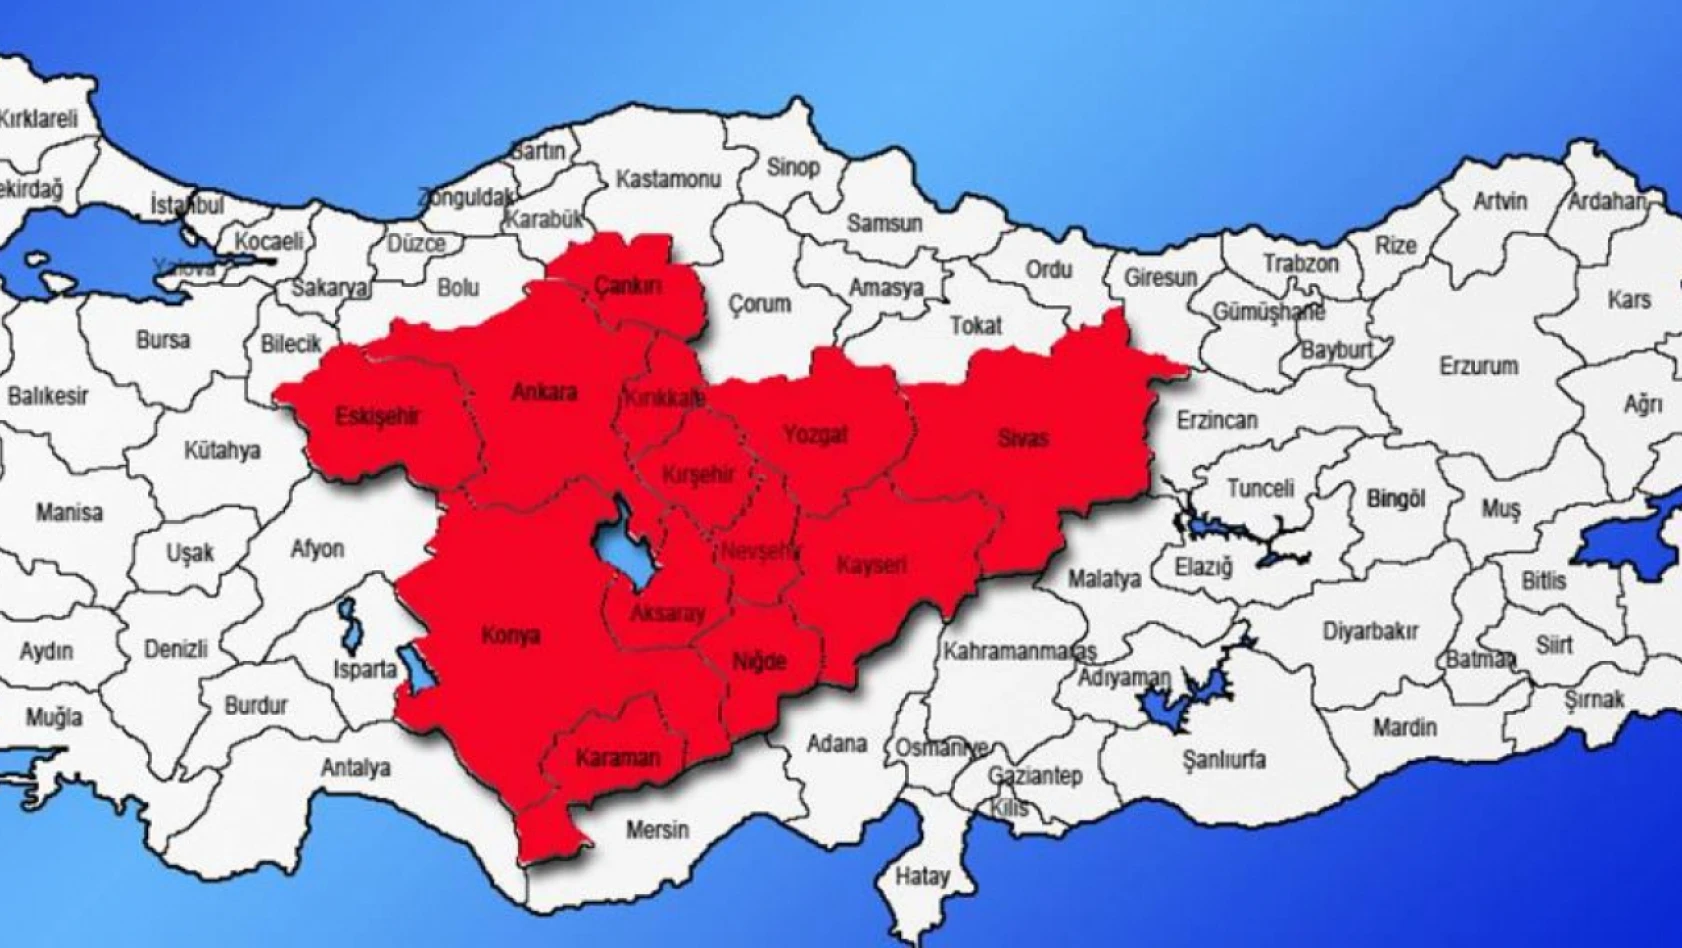 Kayseri, Yozgat, Nevşehir, Eskişehir, Sivas, Çankırı, Ankara, Konya dikkat - Uzman isim 9-10-11 Ocak'ı işaret etti!